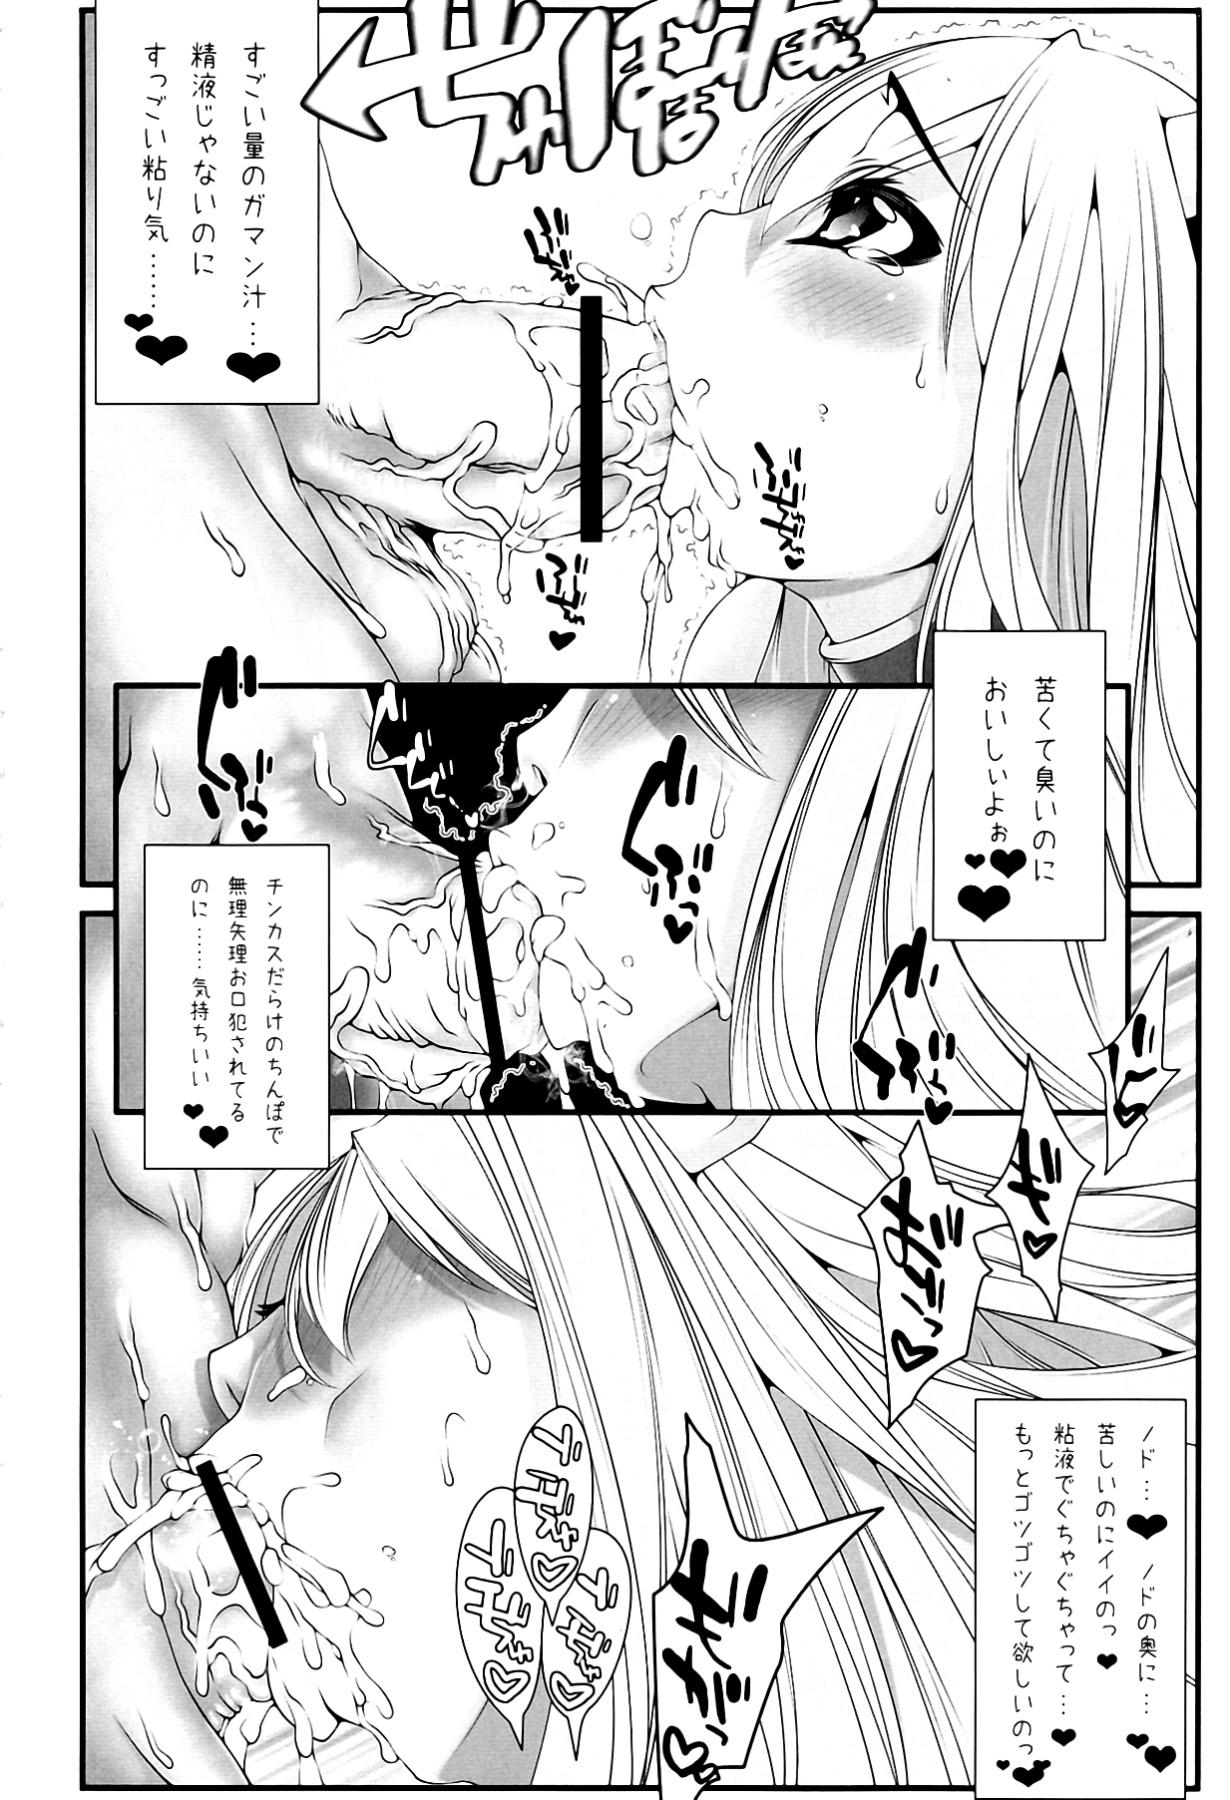 Emo Astraea-san to. - Sora no otoshimono Ex Girlfriends - Page 6